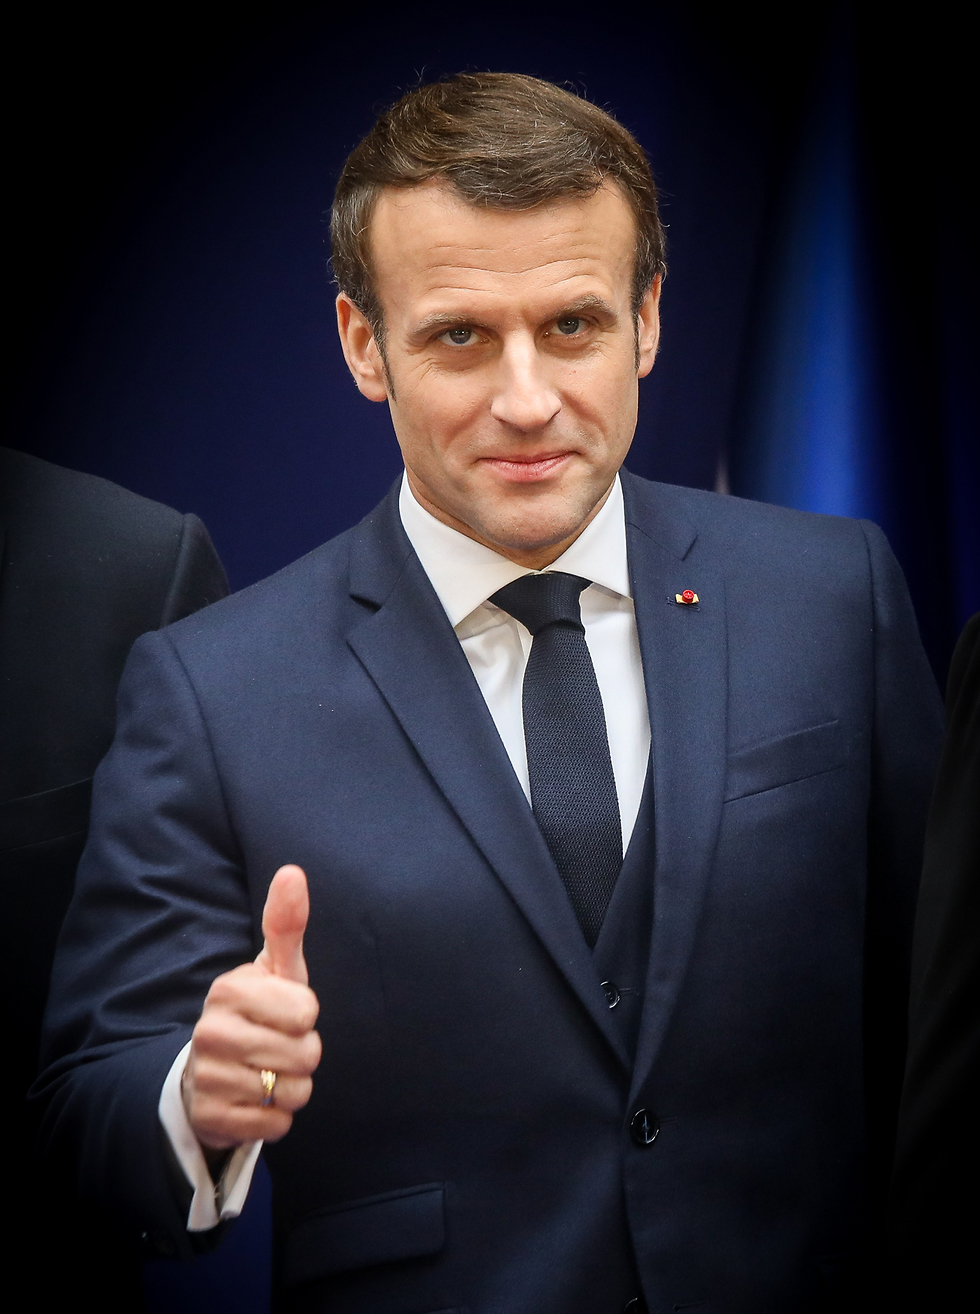 נשיא צרפת עמנואל מקרון (צילום: מארק ישראל סלם)